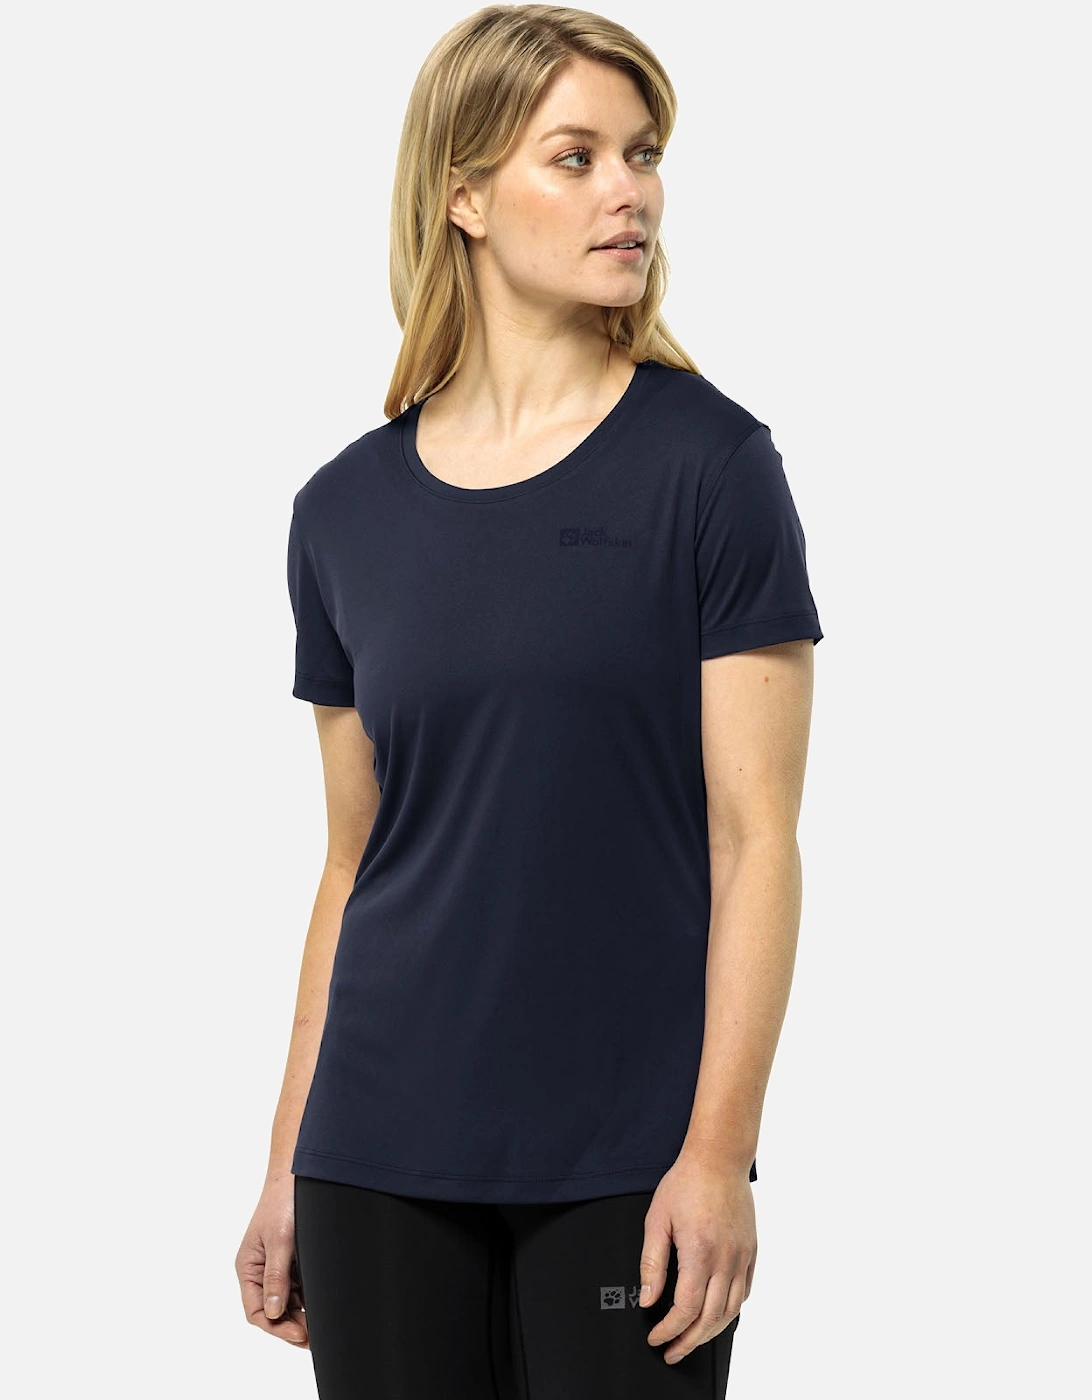 Womens Tech Short Sleeve T-Shirt, 8 of 7